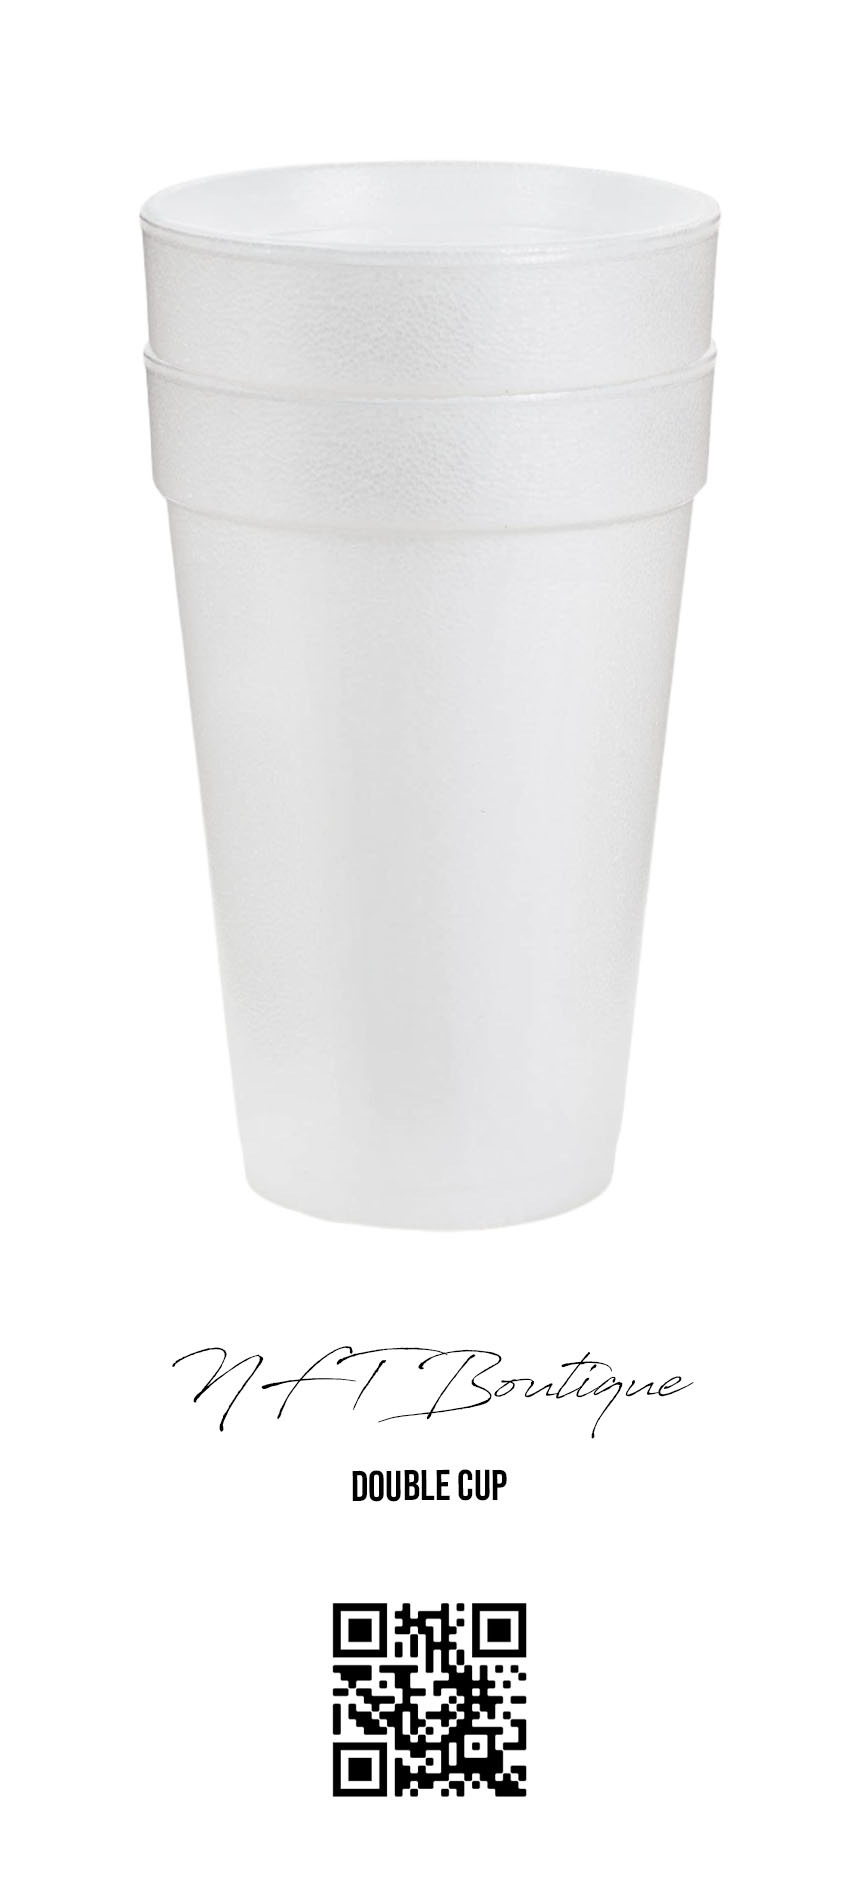 Double Cup, Styrofoam cup - NFTBoutique